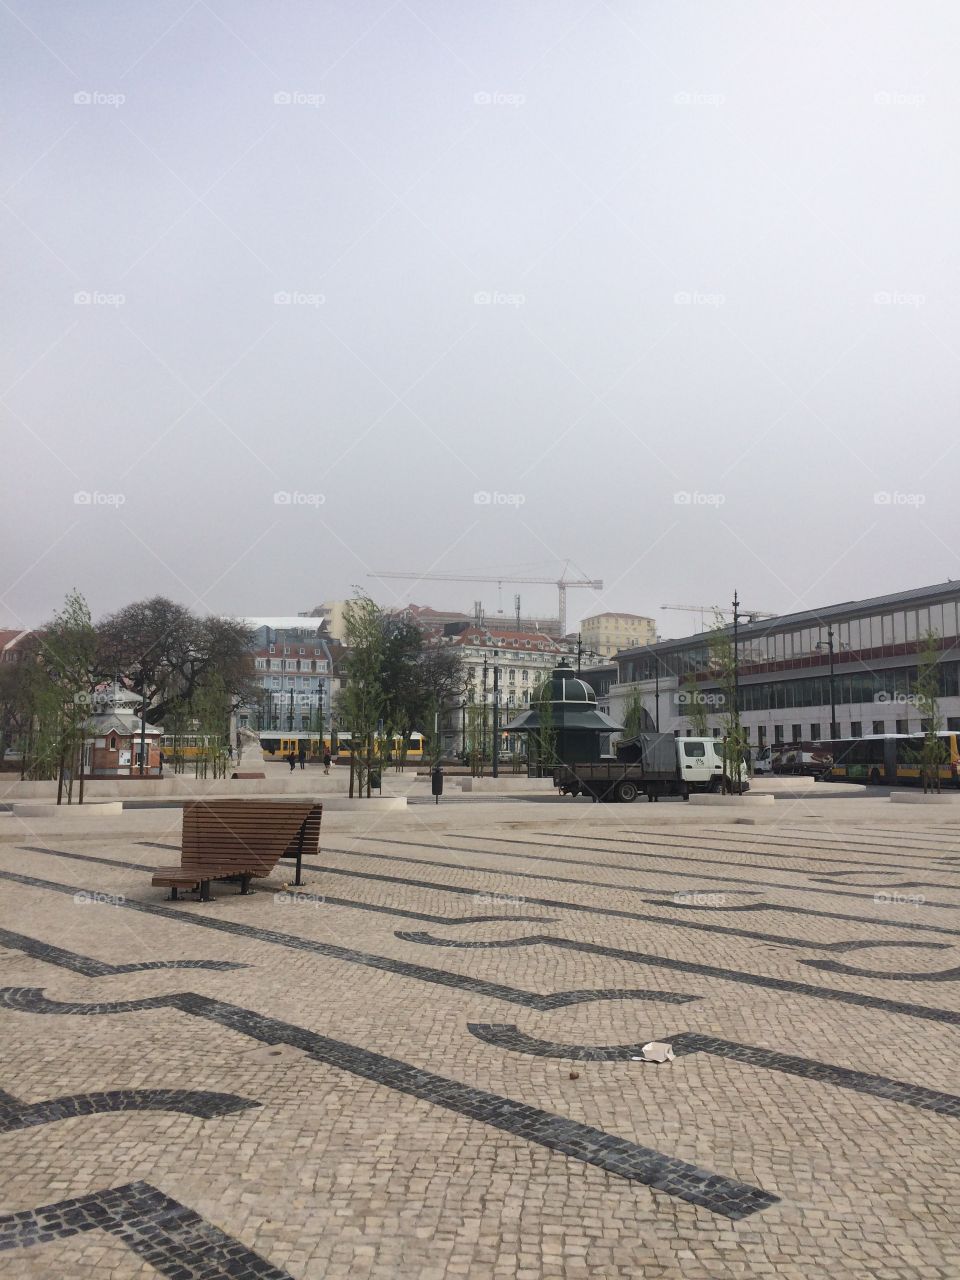  Cais Sodre in Lisbon tourist area 